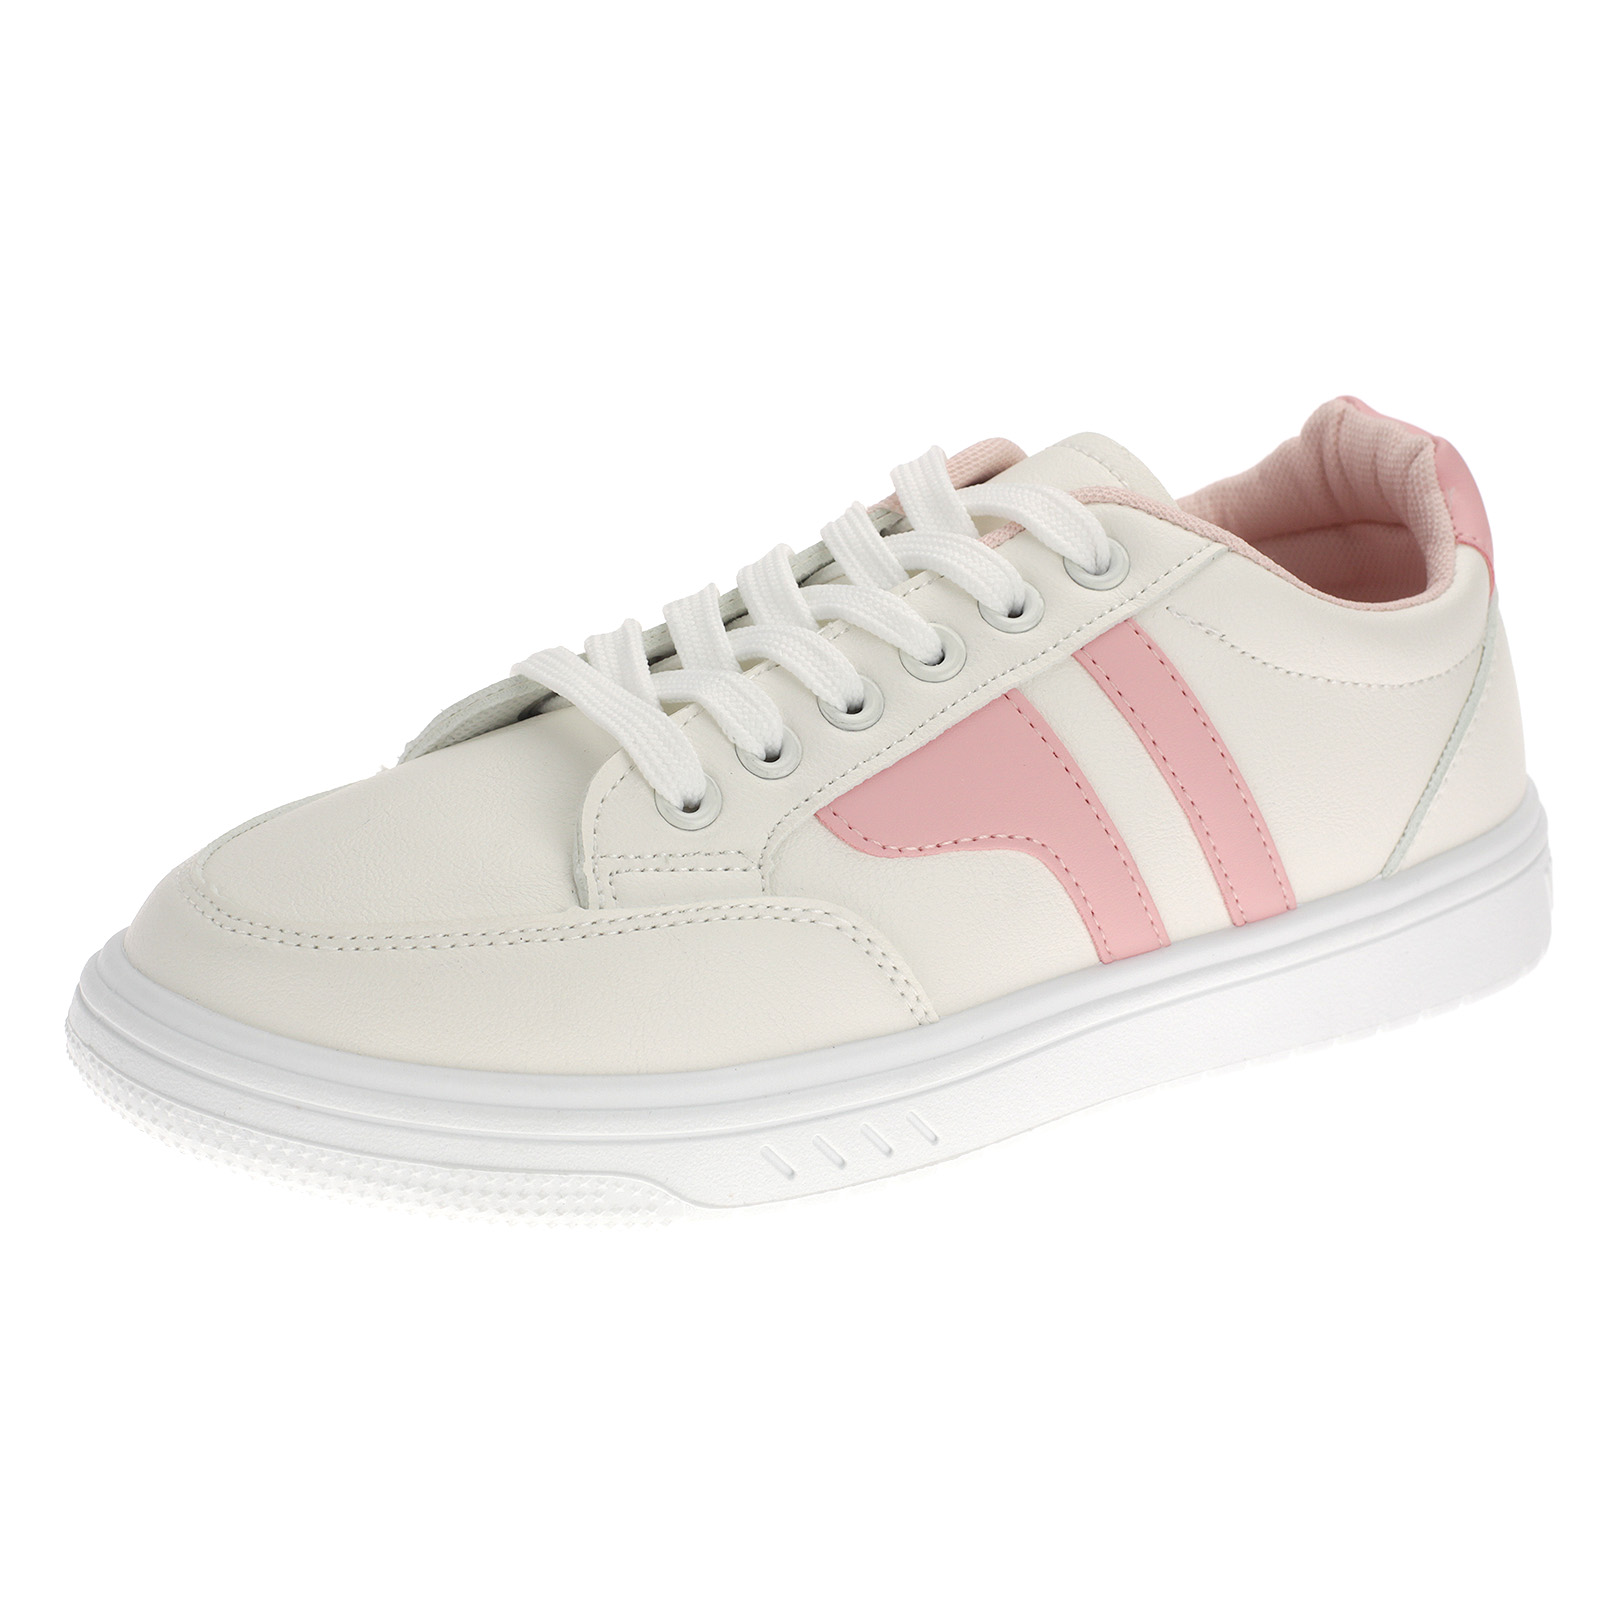 Damen Trendige Sneaker Low-Top Schnürer 3450 Weiß Pink